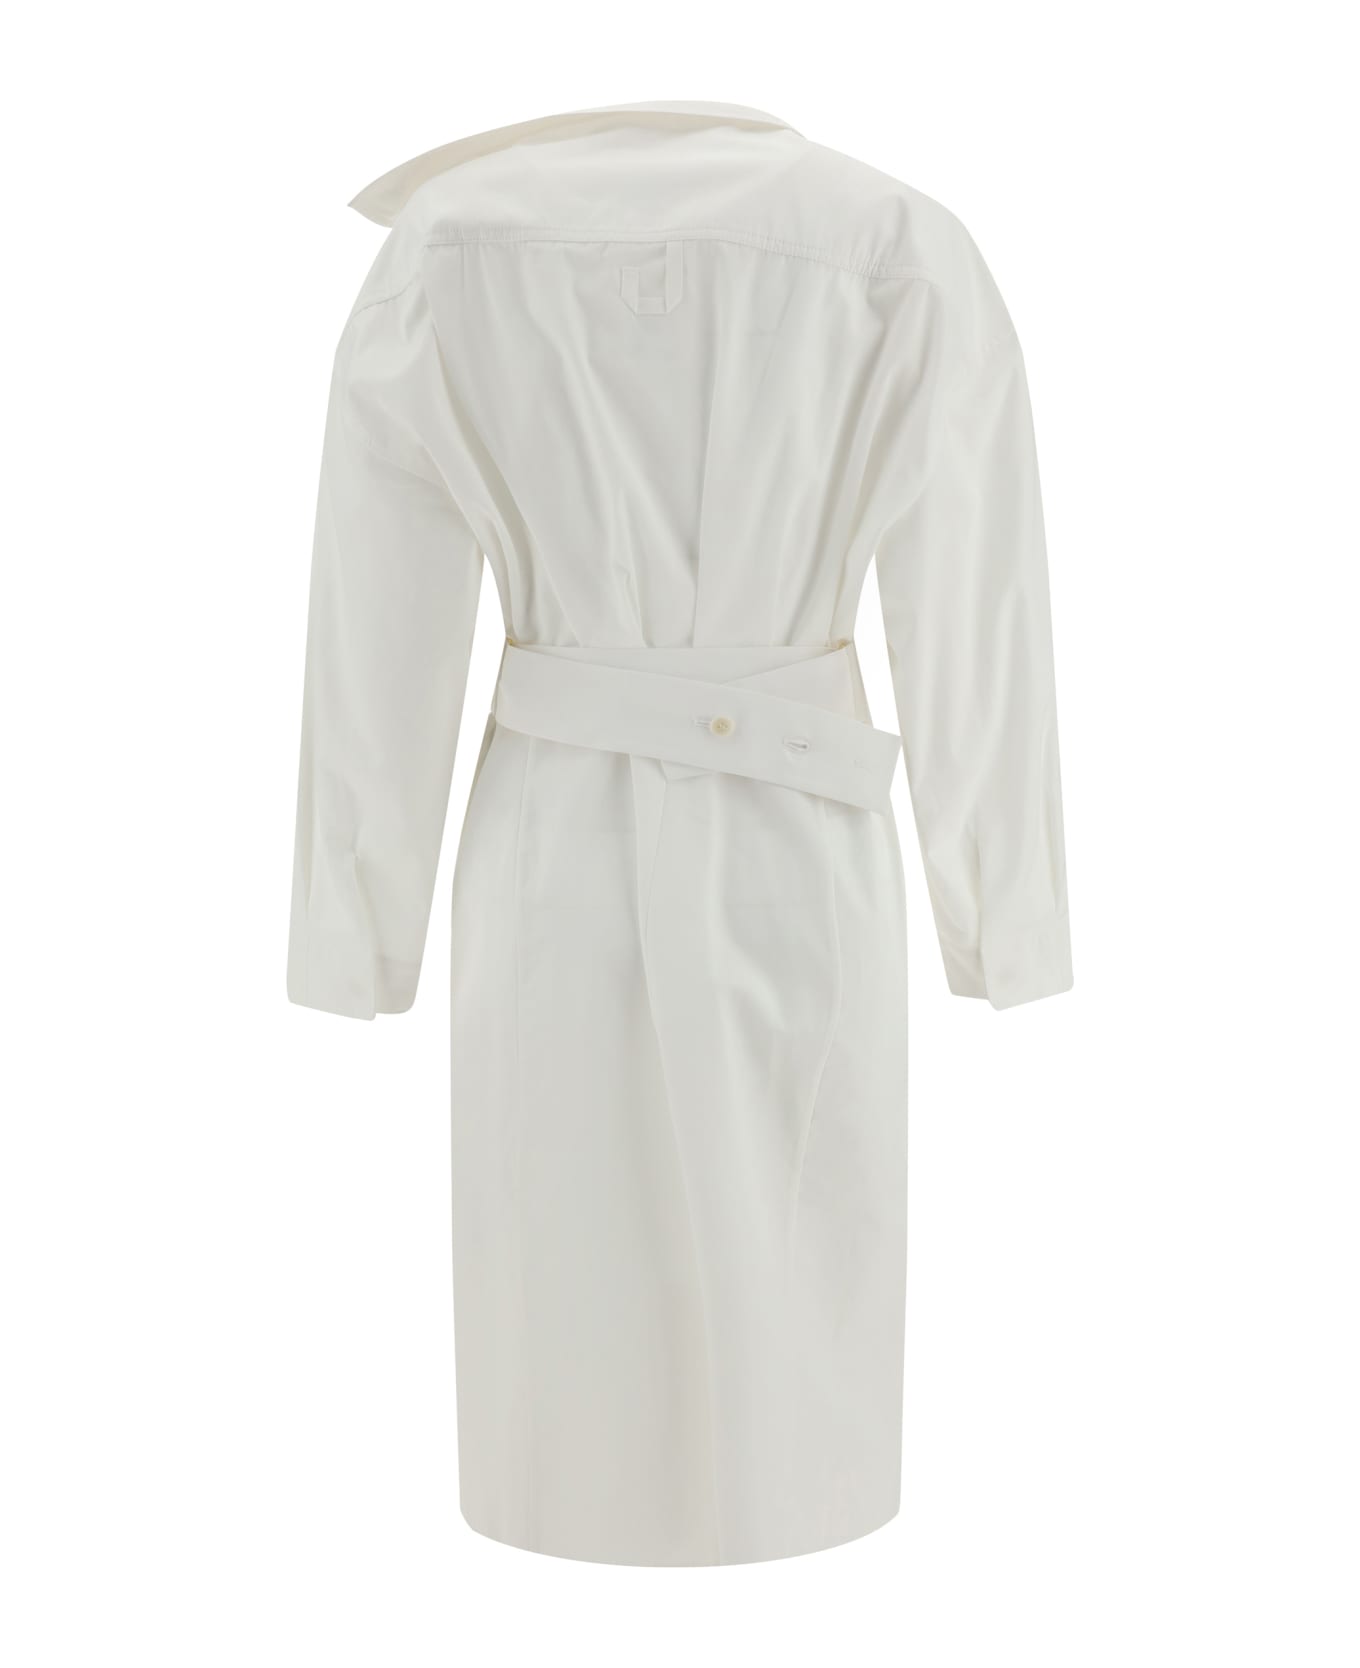 Jacquemus La Robe Chemise Dress - White レインコート